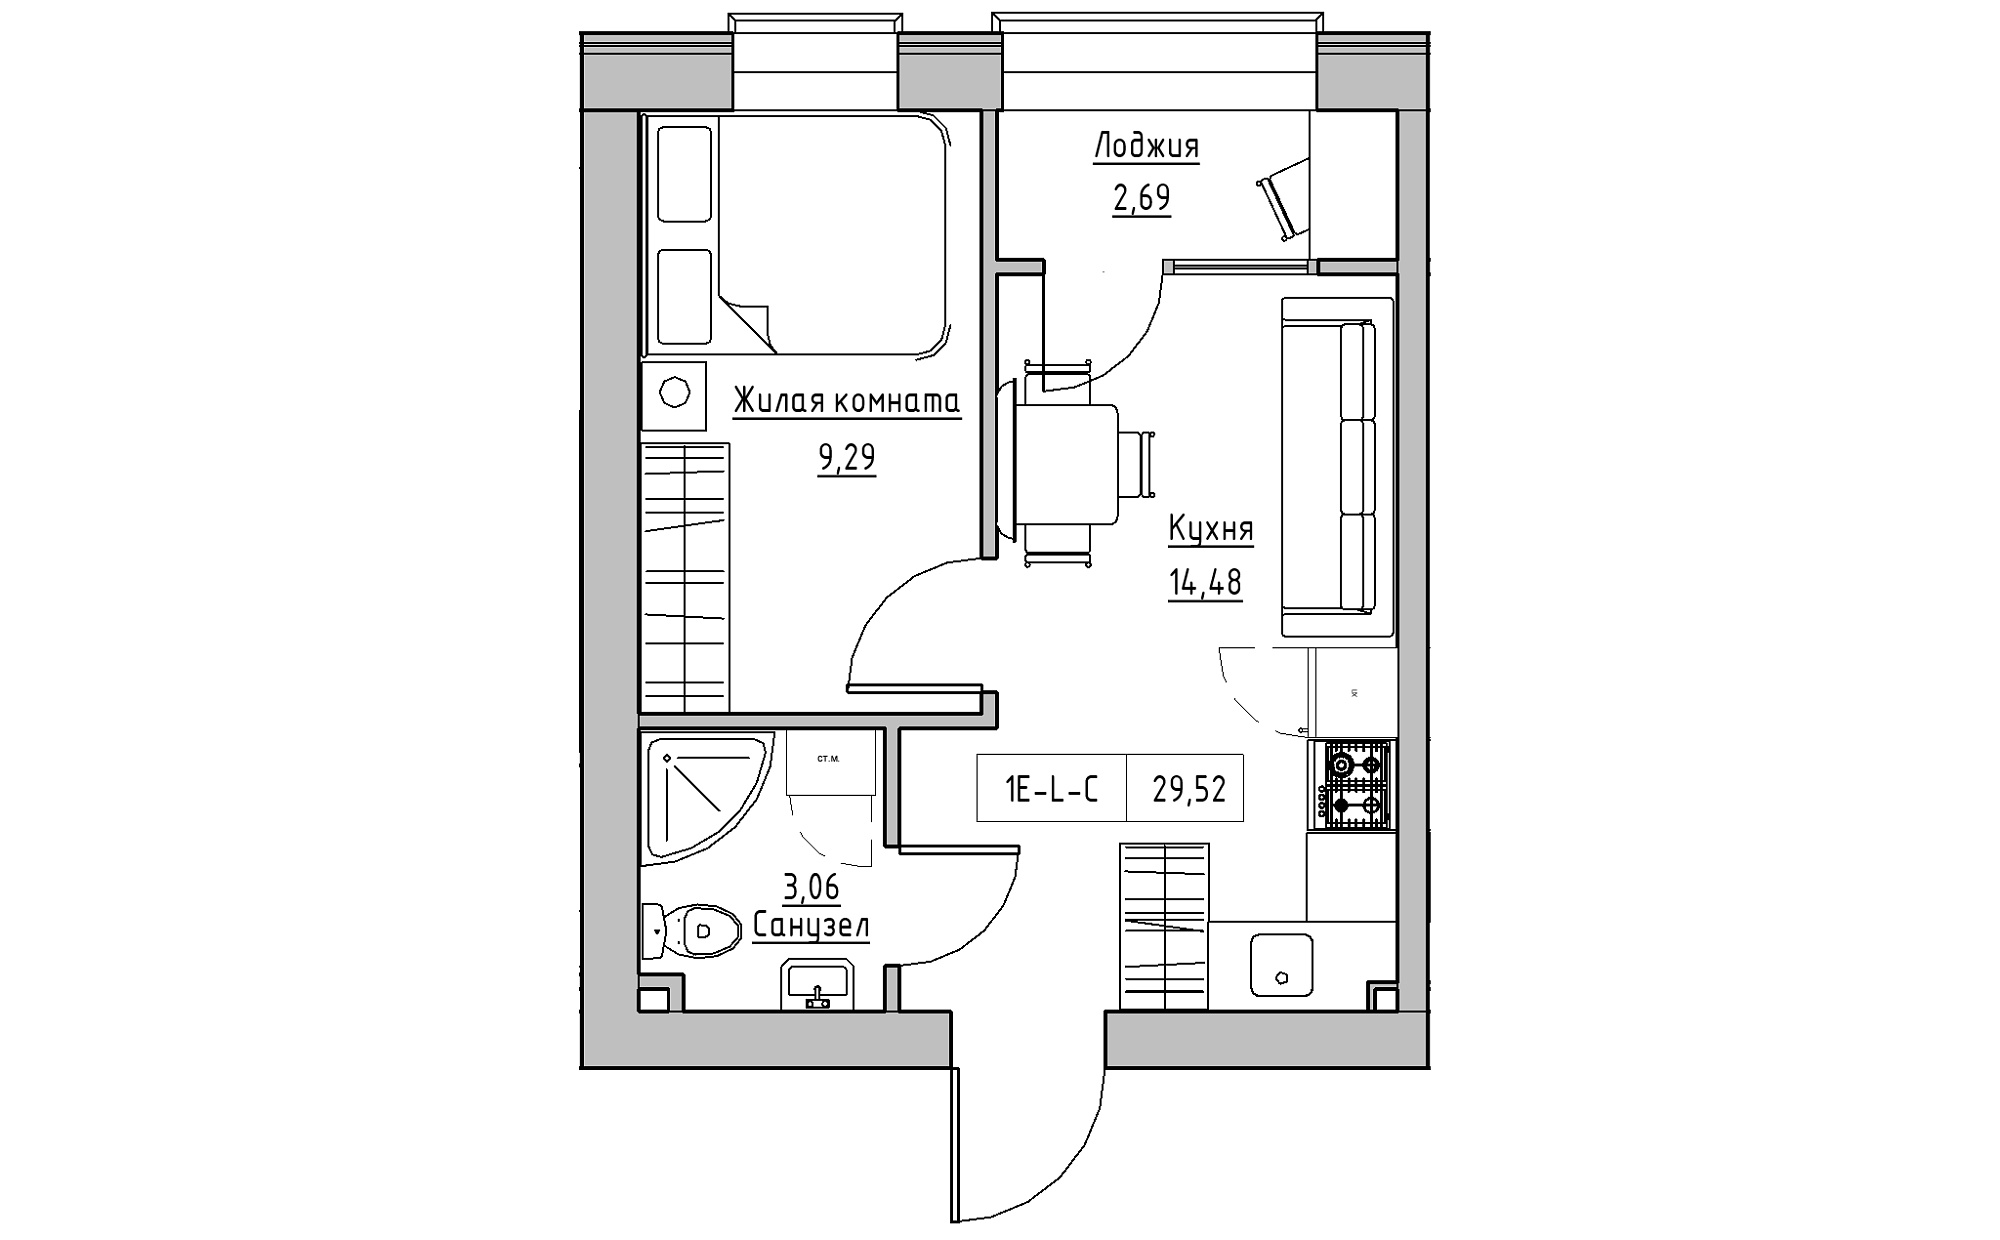 Планировка 1-к квартира площей 29.52м2, KS-022-03/0006.